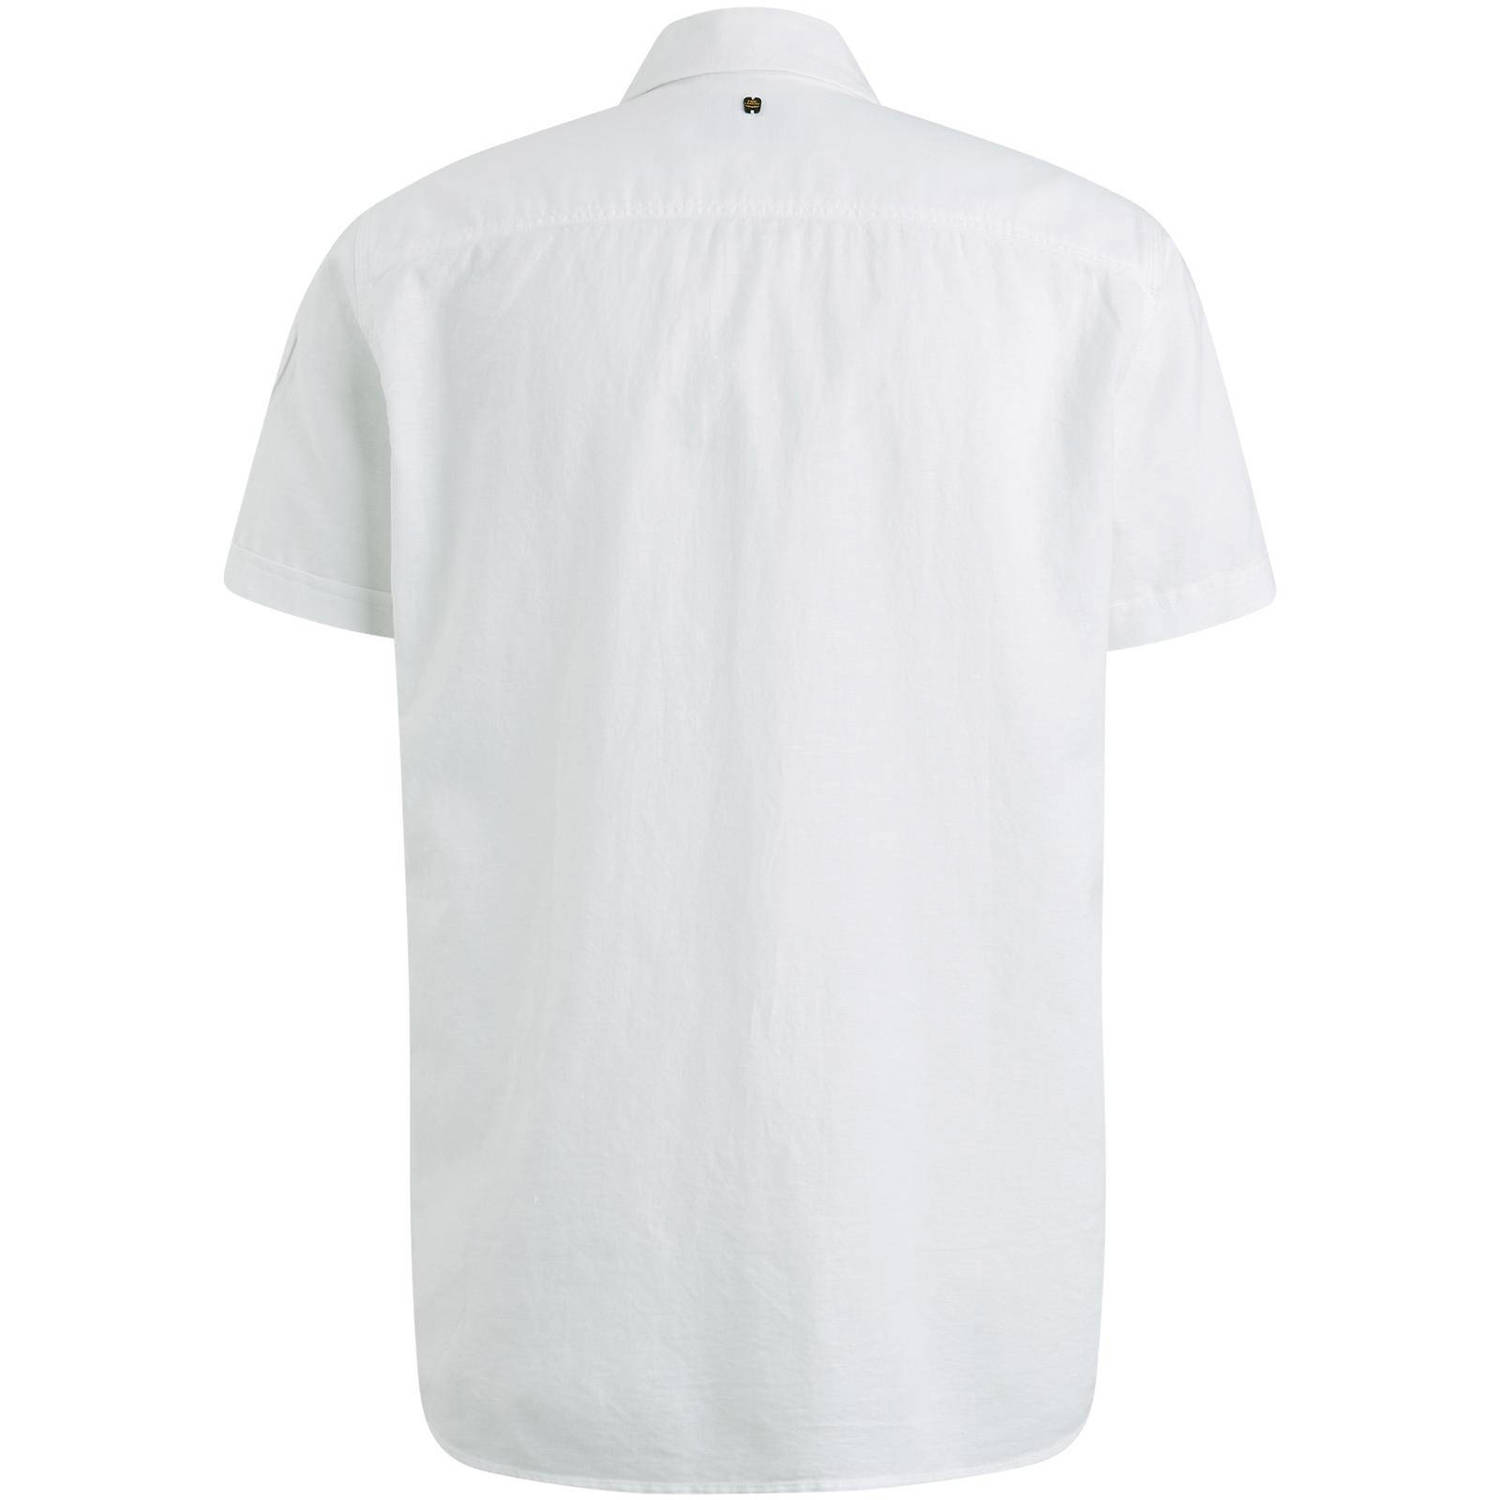 PME Legend regular fit overhemd met logo wit